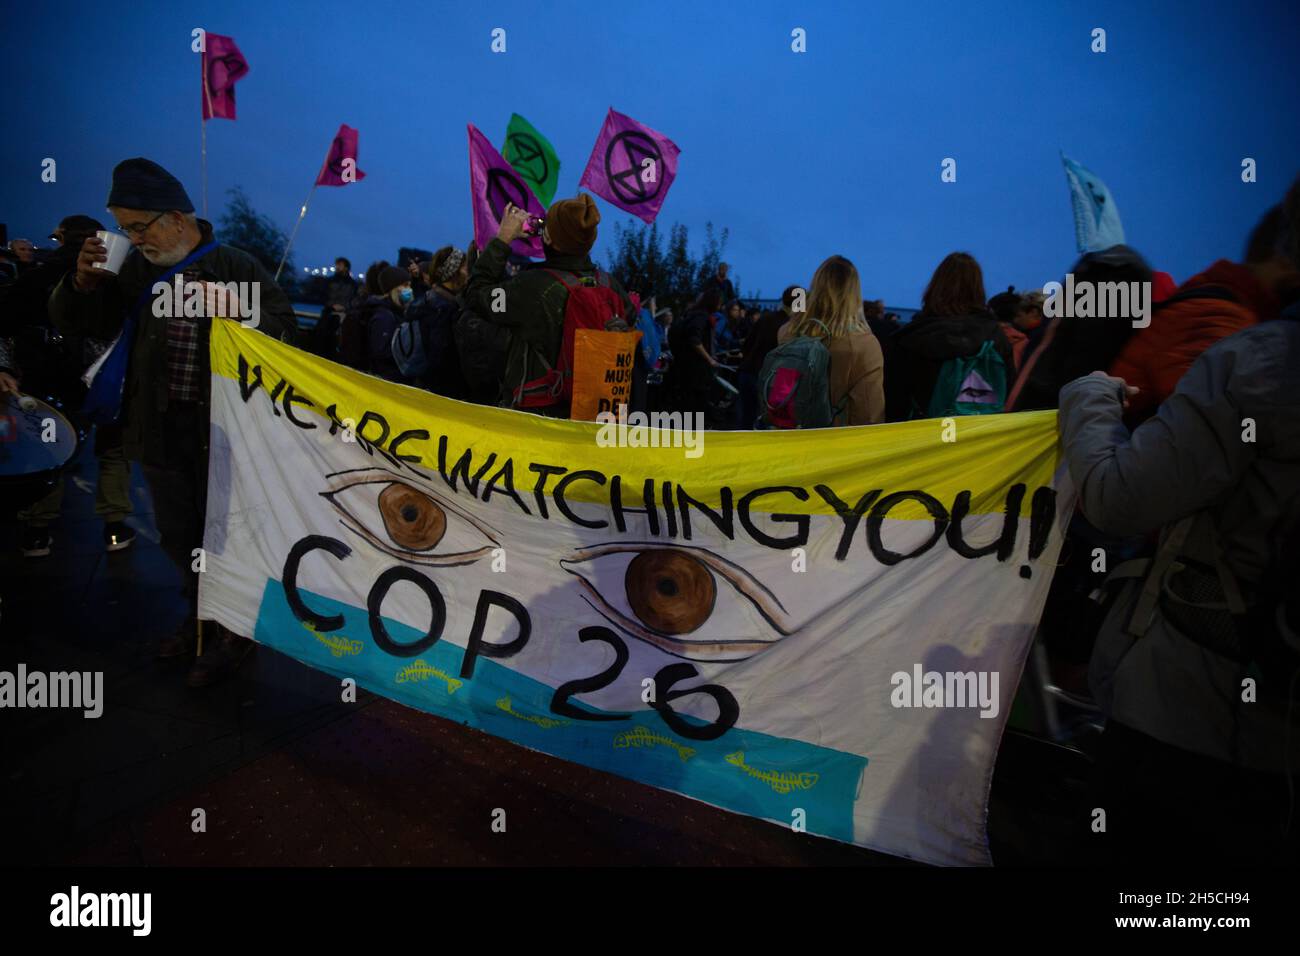 Glasgow, Scozia, Regno Unito. Dimostrazione da parte di manifestanti al di fuori della 26a Conferenza delle Nazioni Unite sui cambiamenti climatici, nota come COP26, a Glasgow, Scozia, Regno Unito, L'8 novembre 2021. Foto:Jeremy Sutton-Hibbert/Alamy Live News. Foto Stock